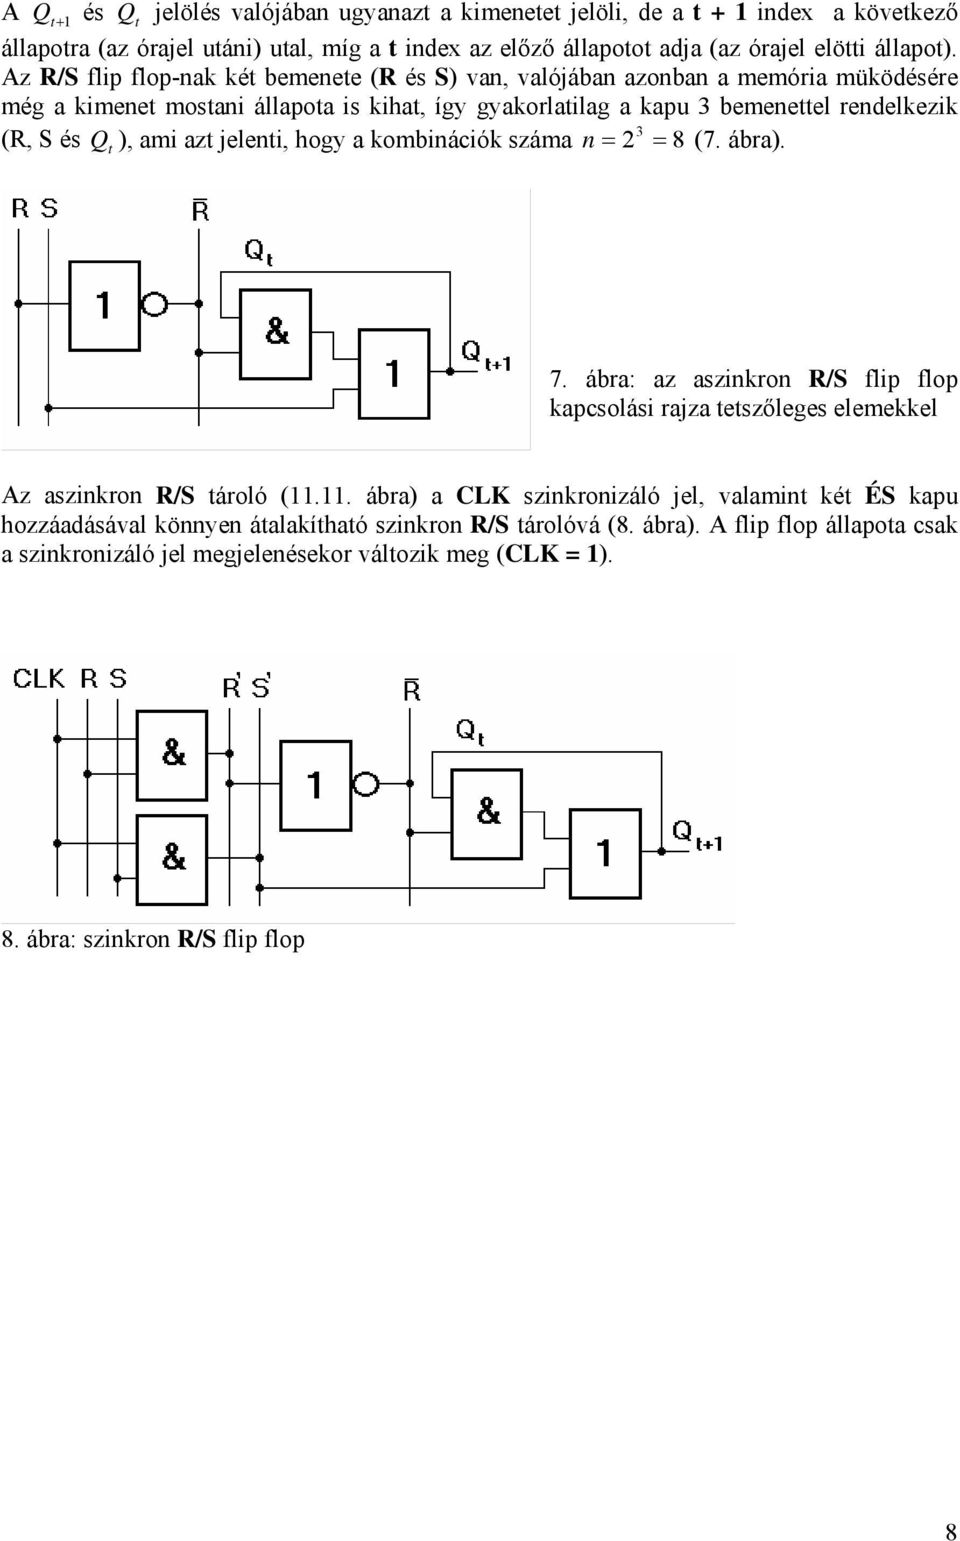 jelenti, hogy a kobinációk száa n 2 3 8 7. ábra. t 7. ábra: az aszinkron R/S flip flop kapcsolási rajza tetszőleges eleekkel z aszinkron R/S tároló 11.